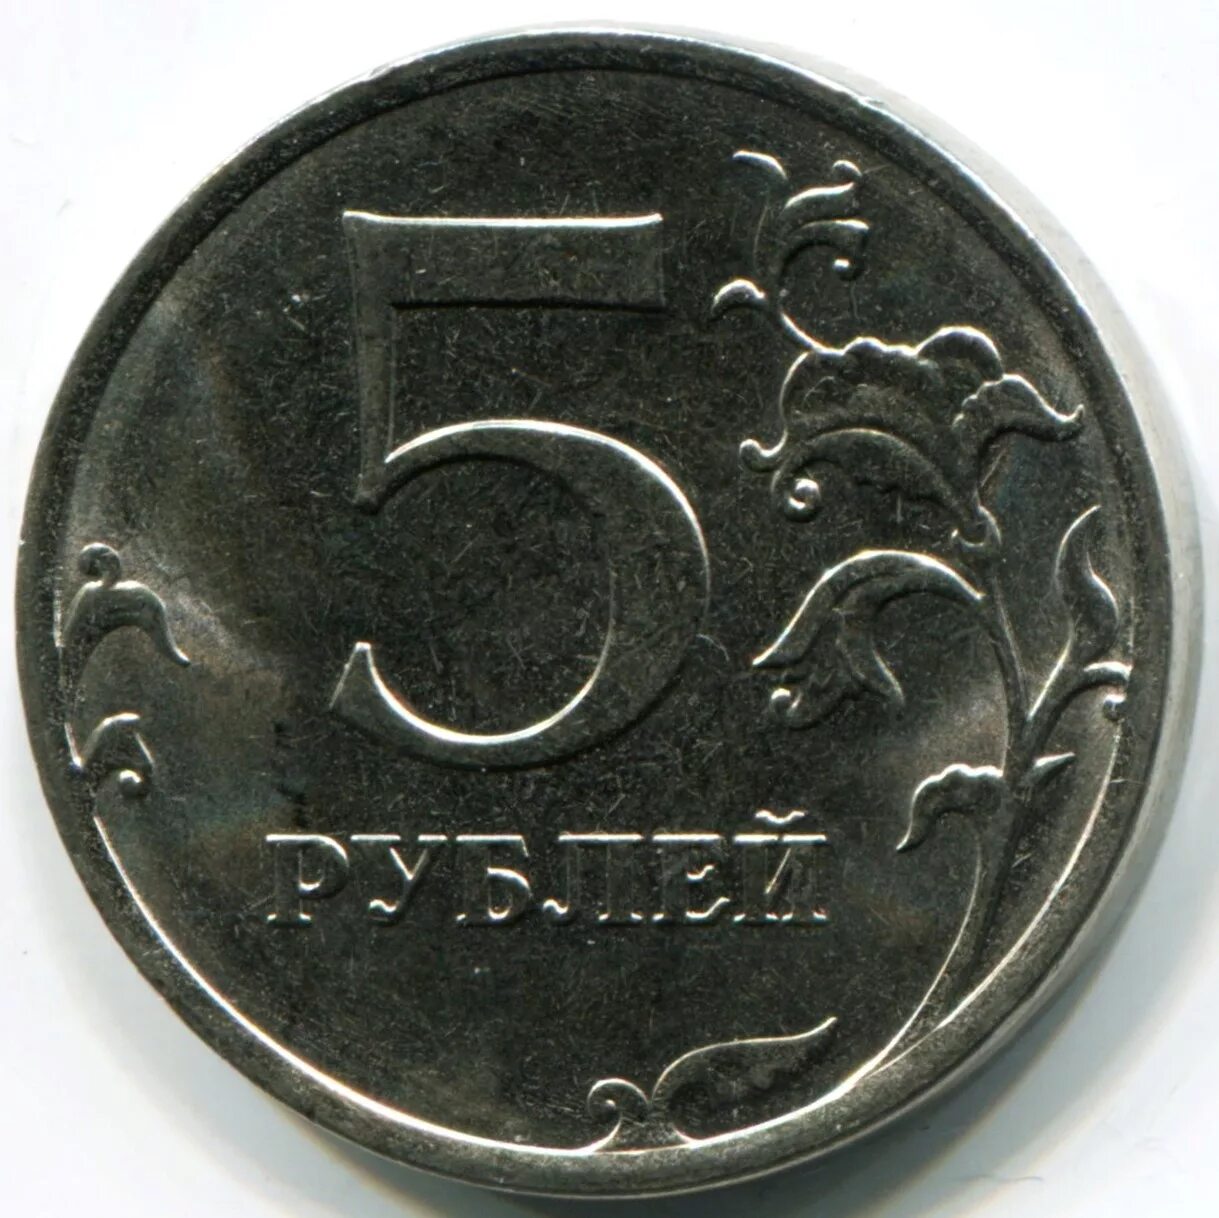 5 рублей 18 года. 5 Рублей 1997 года СПМД И ММД. Монета 5 рублей. Диаметр 5 рублевой монеты. Пять рублей.